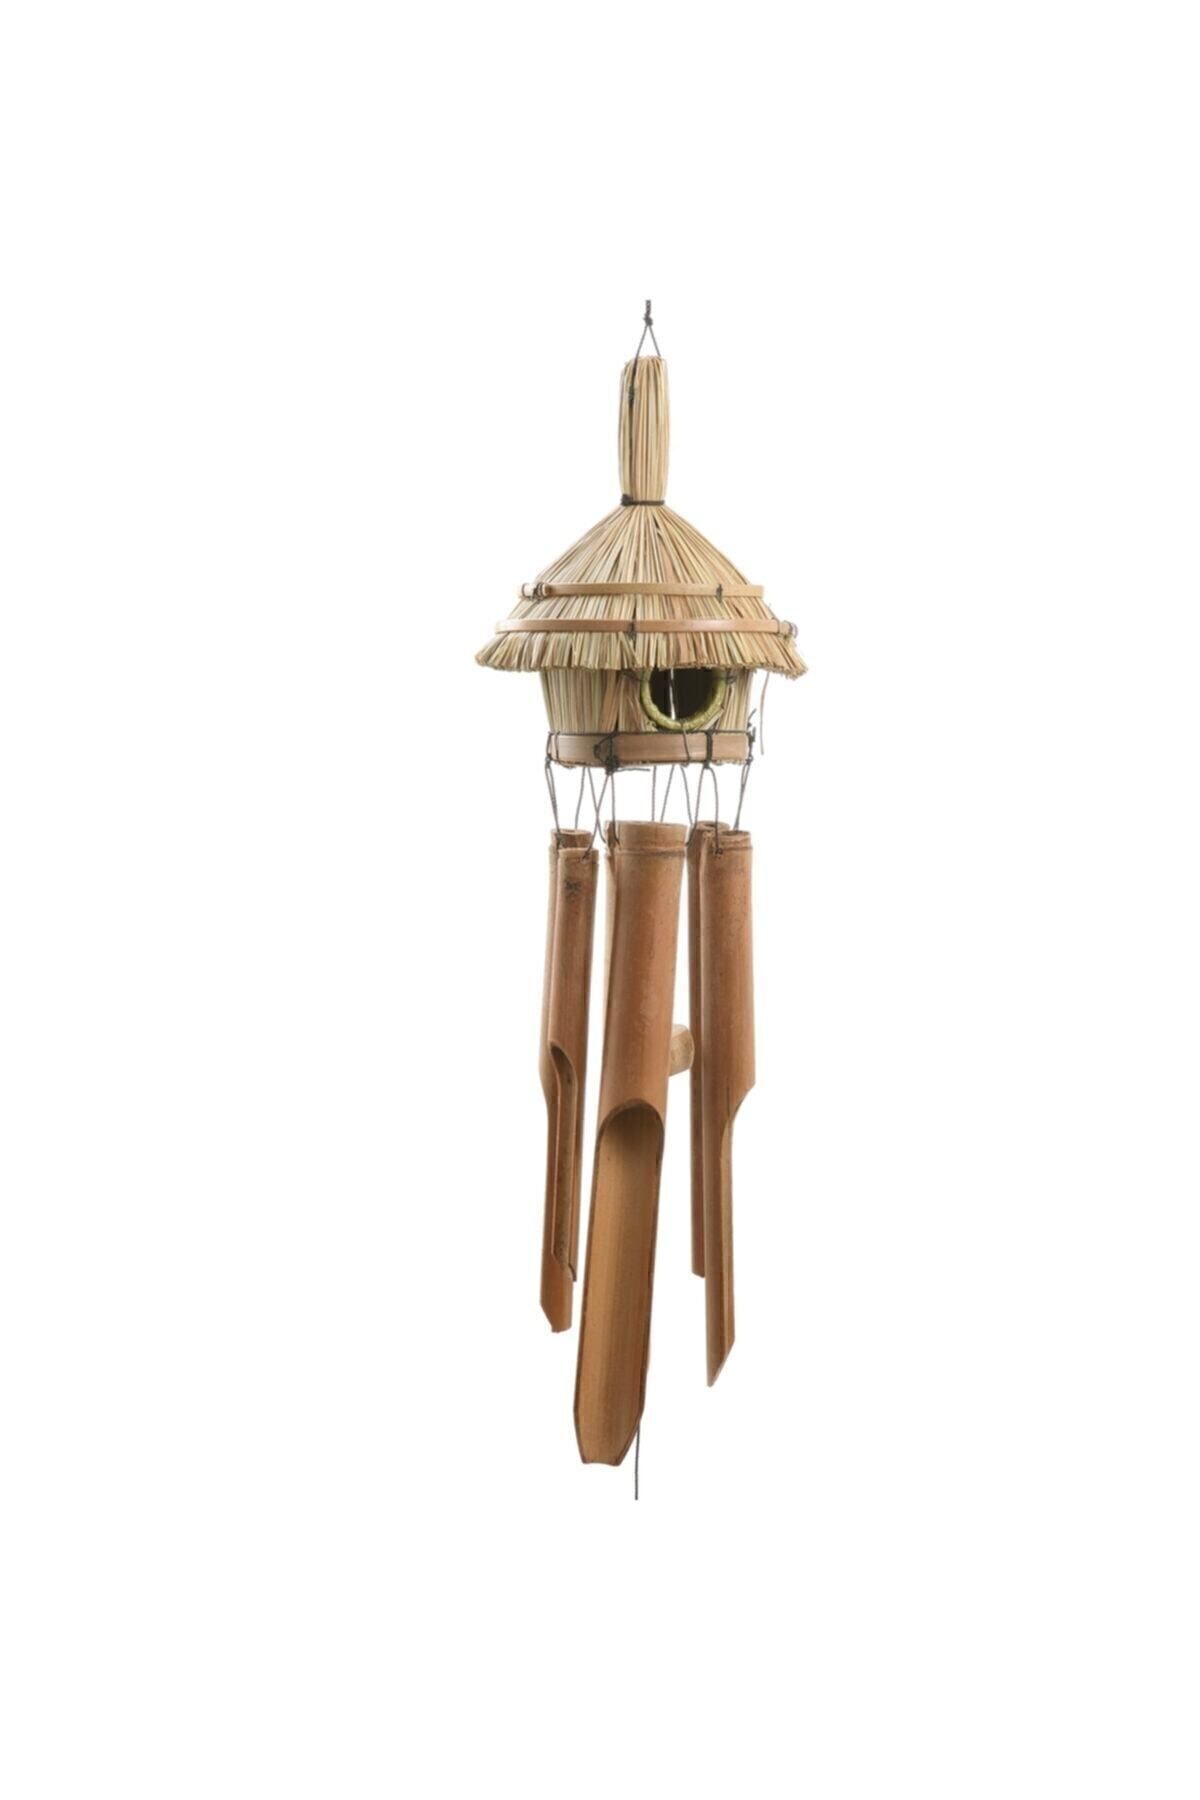 BARIŞ Hasır Kuş Yuvalı Bambu Rüzgar Çanı